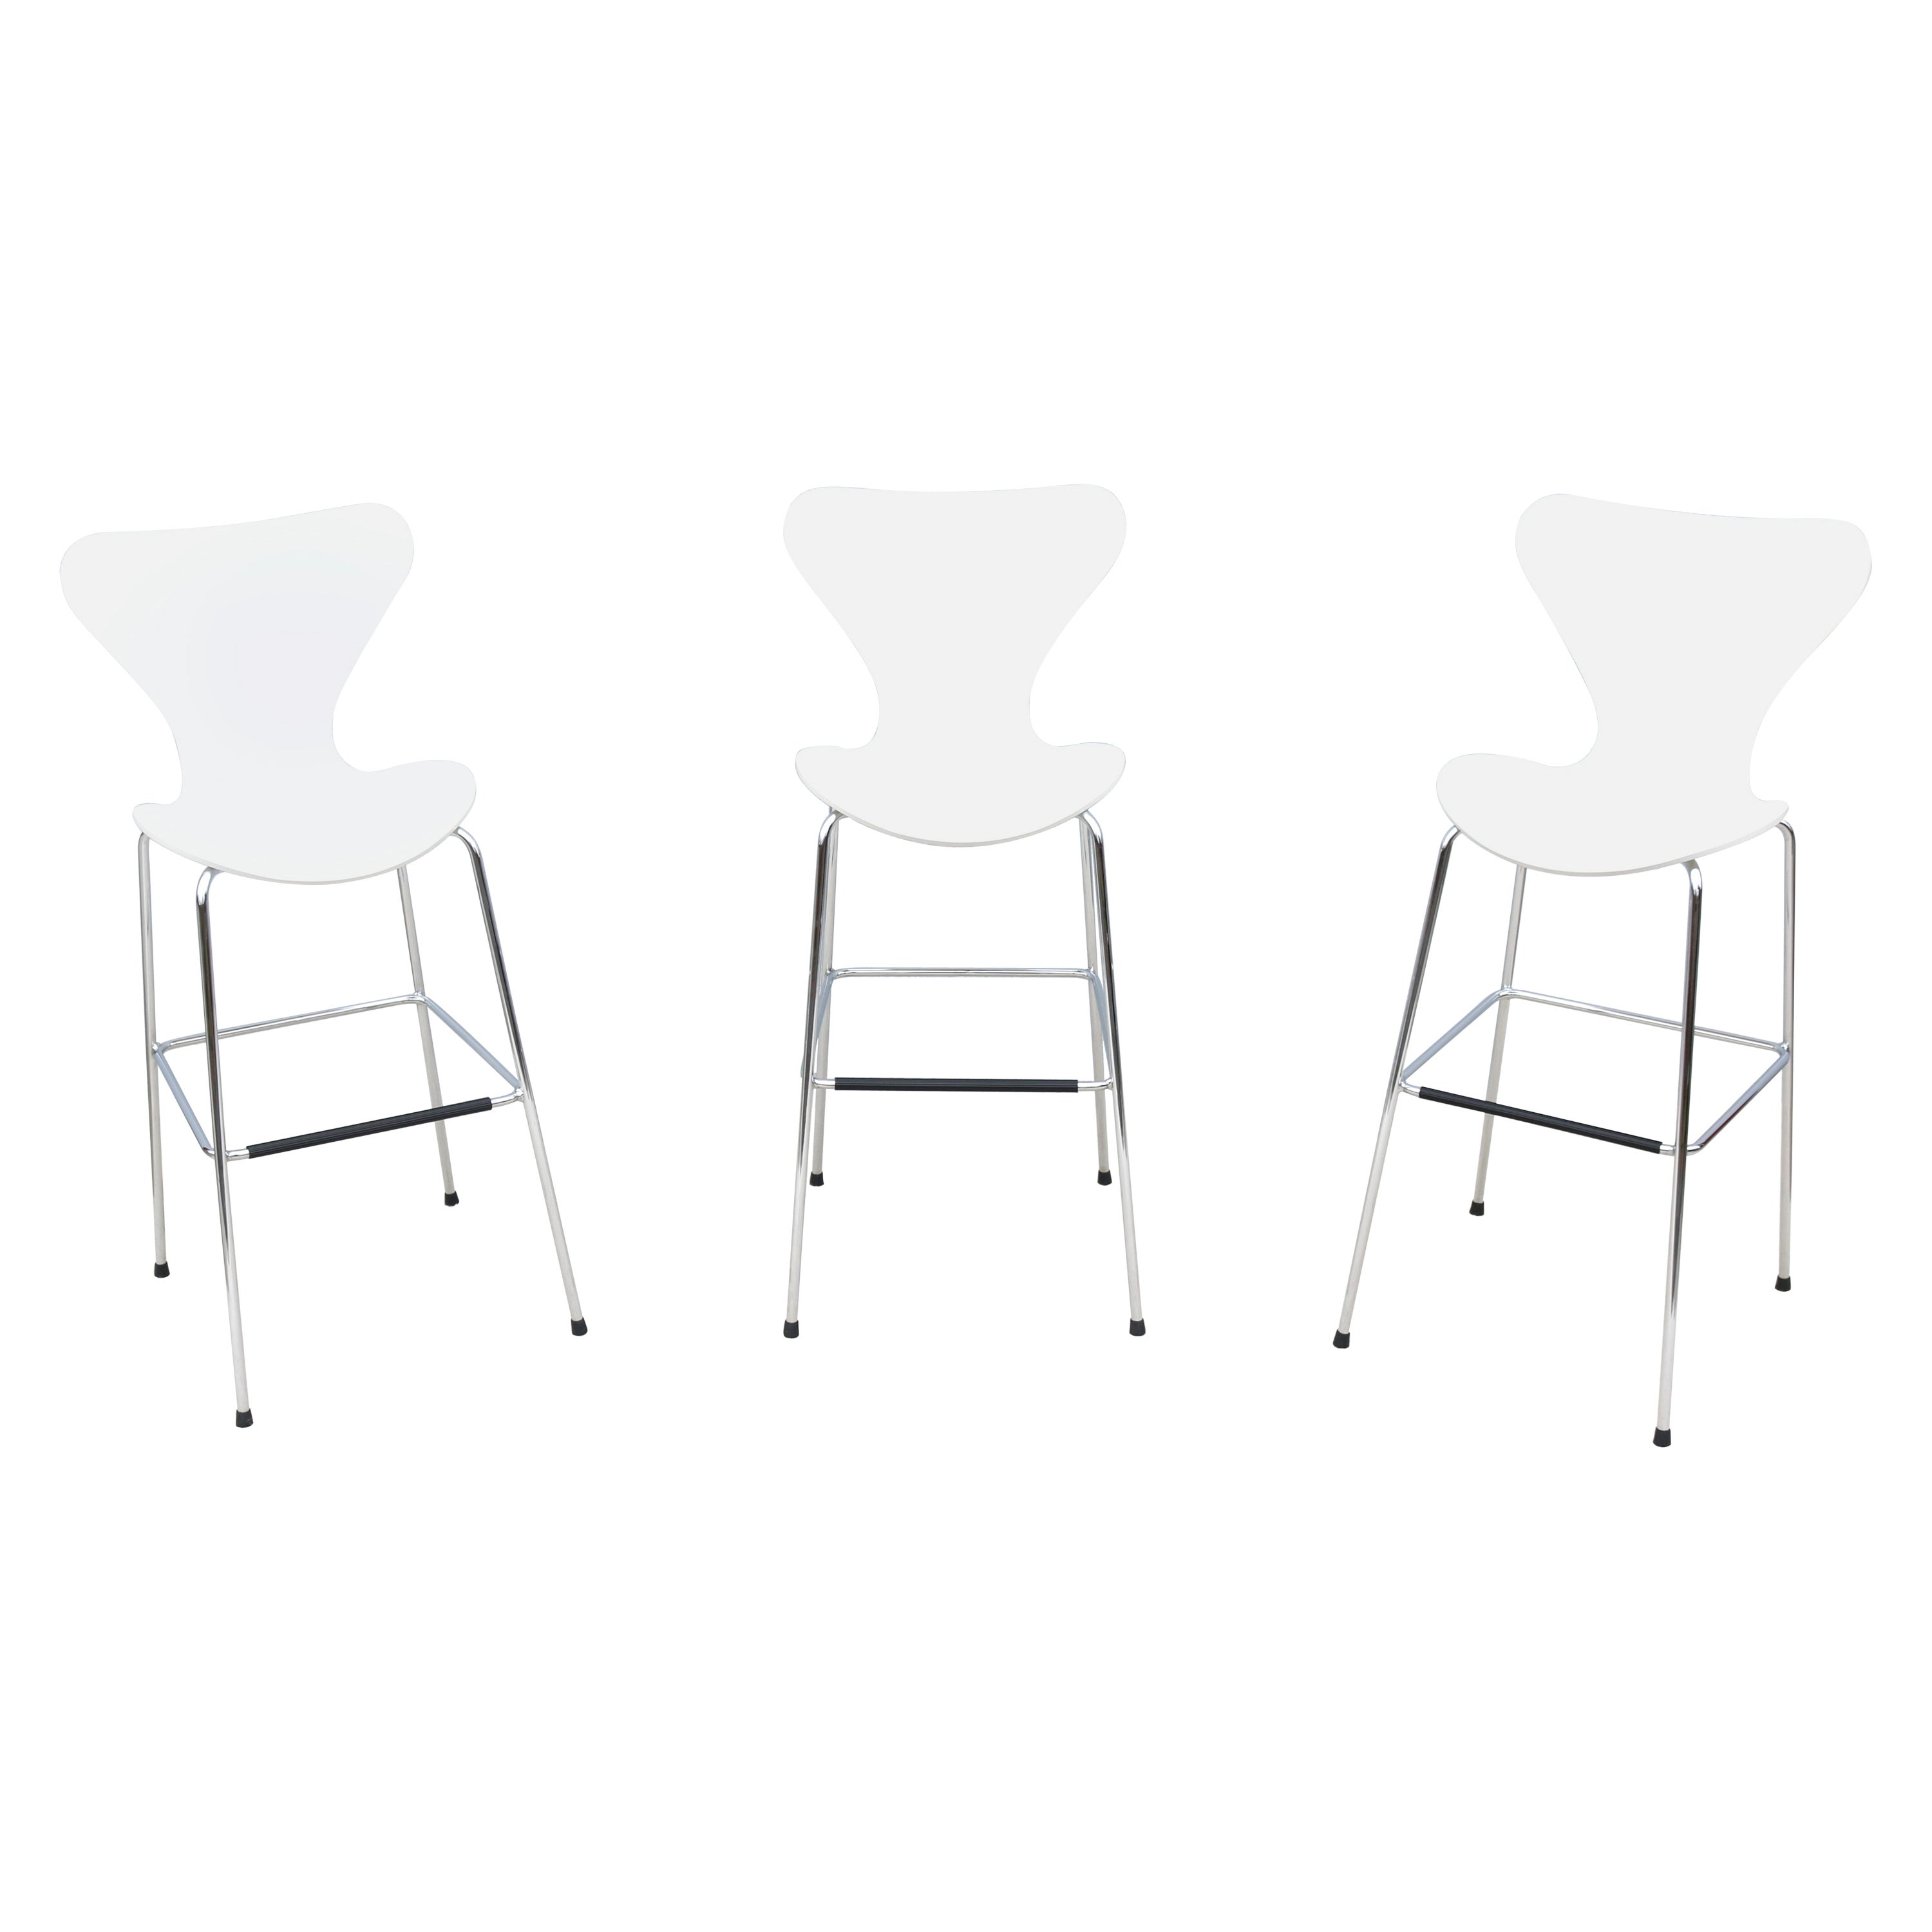 Danish Mid-Century Modern Arne Jacobsen Style Series 7 White Bar Stools Set of 3 For Sale